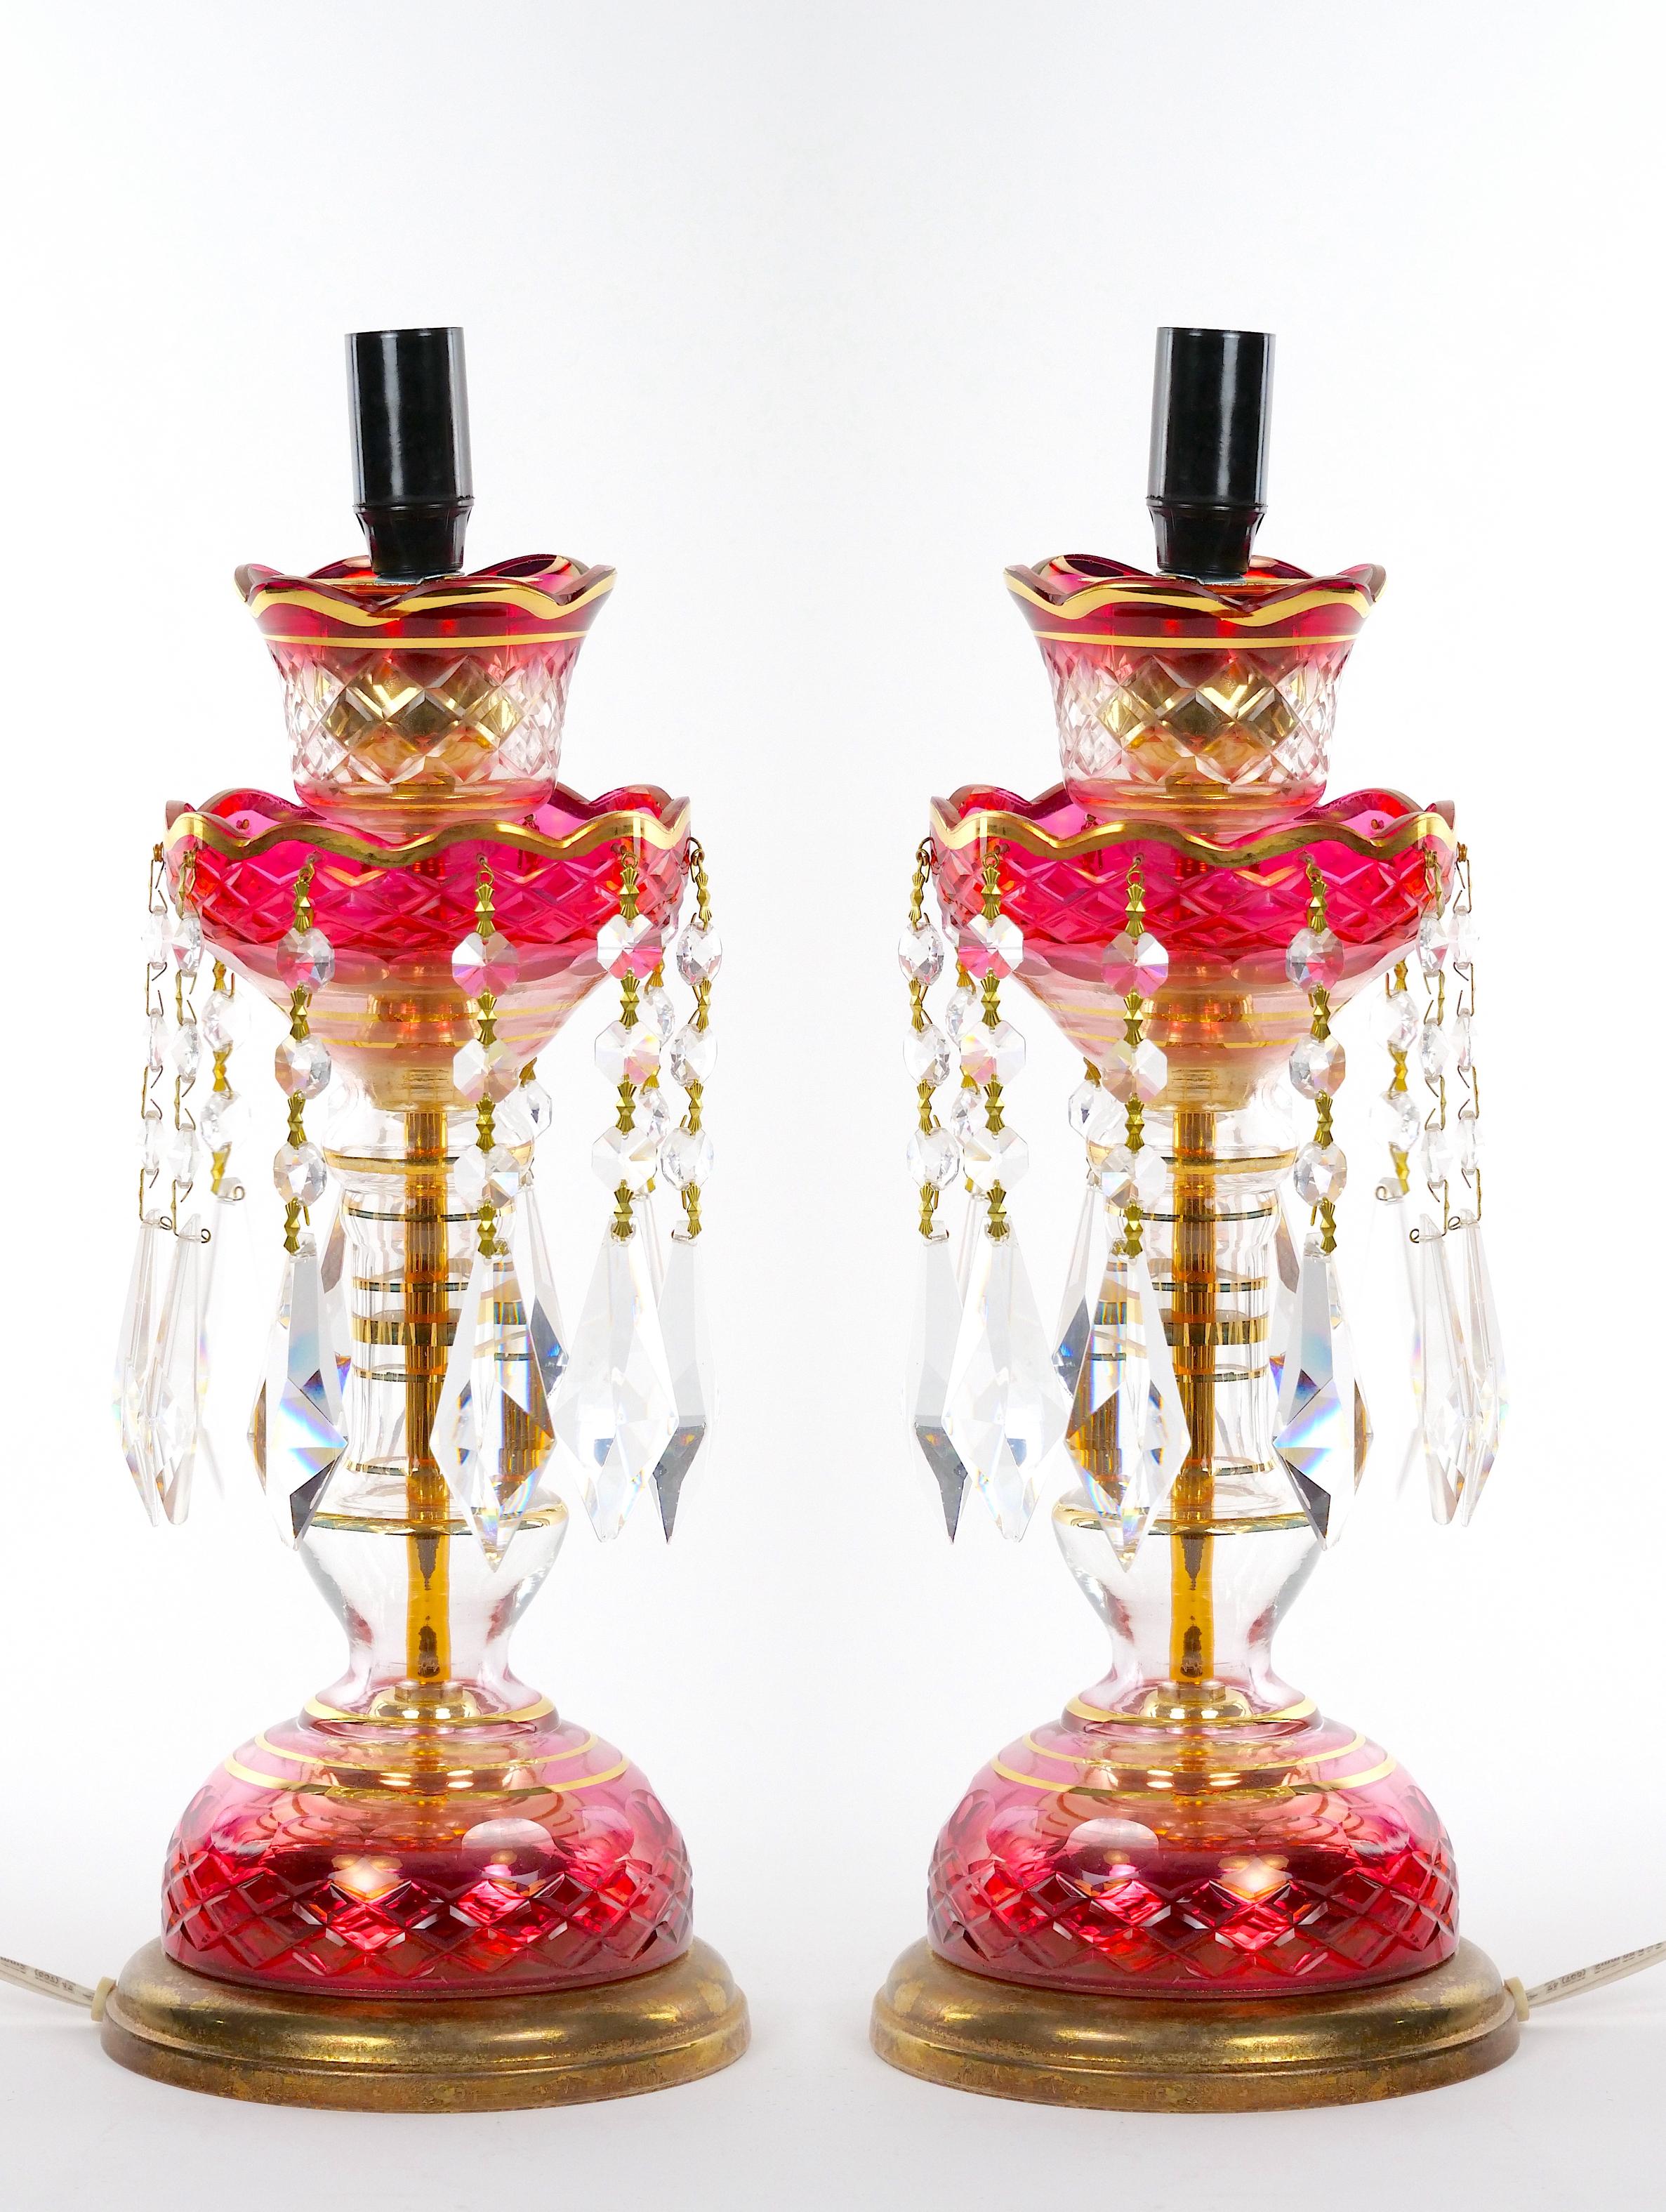 Magnifique paire de lustres (chandeliers) en verre du XIXe siècle, modifiés pour être utilisés comme lampes de table, avec leurs abat-jours en forme d'ouragan en verre taillé rouge canneberge à clair, avec des motifs allongés en forme d'étoile et de